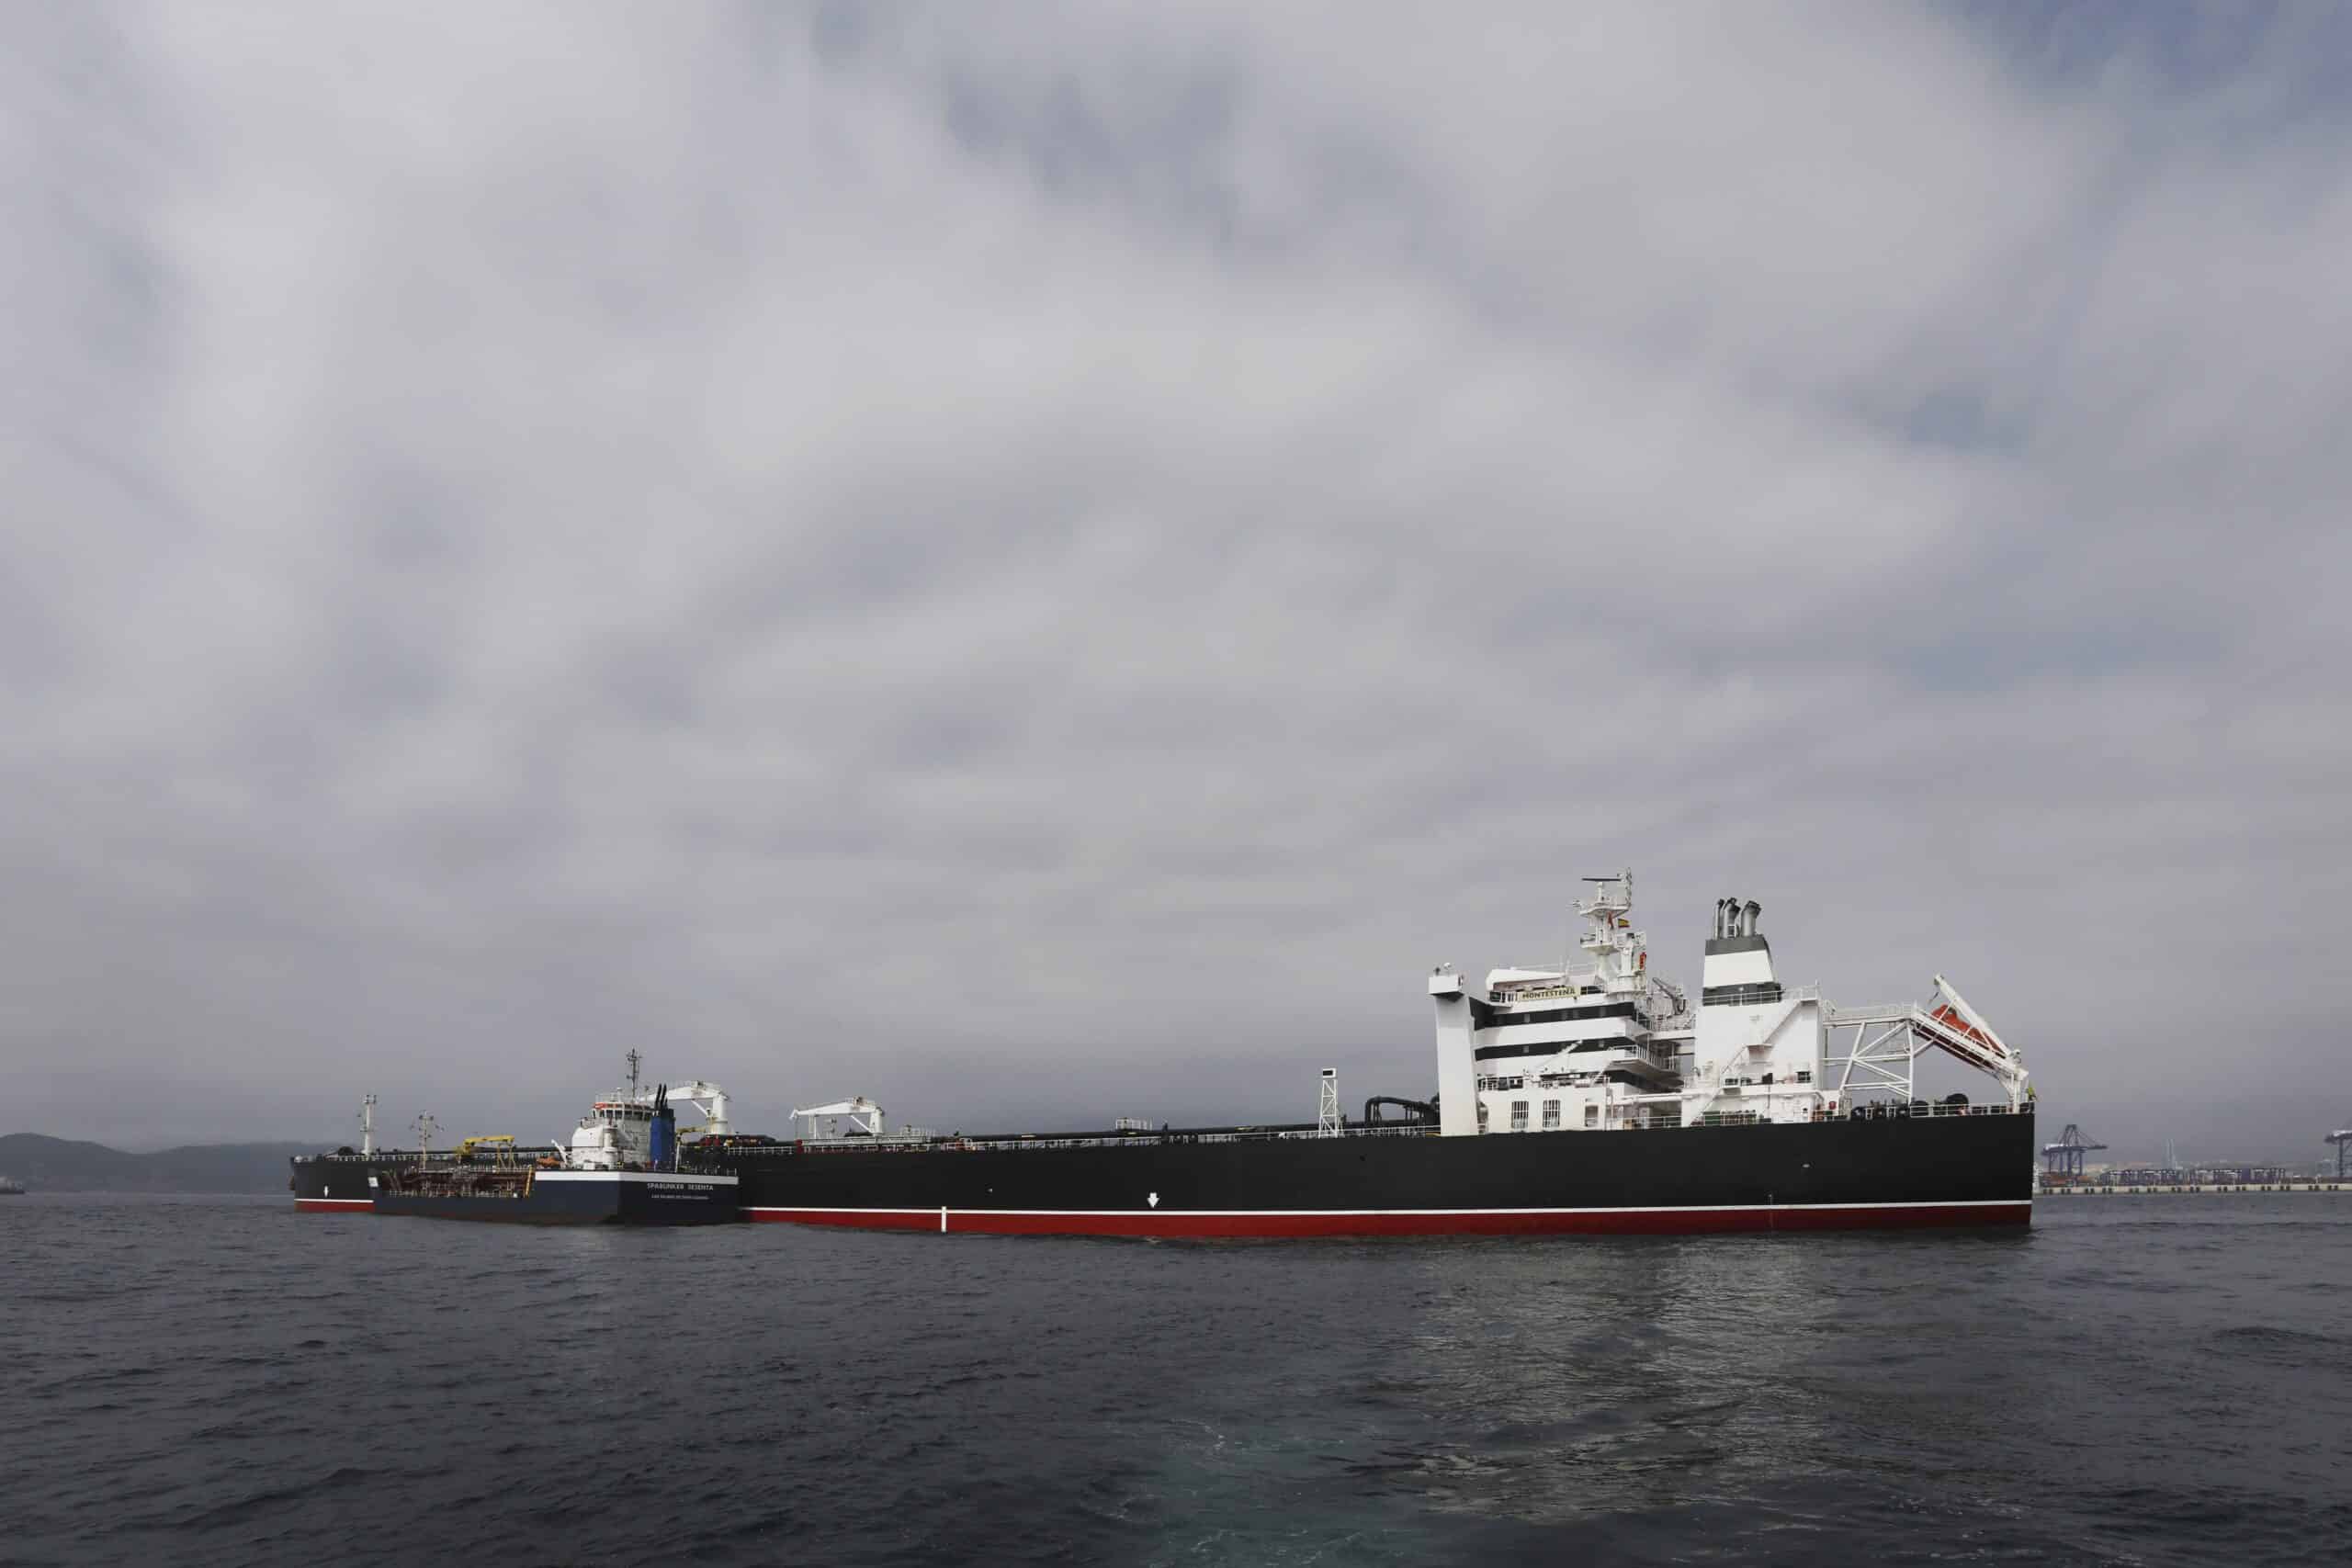 Cepsa prueba con éxito por primera vez en España biocombustibles avanzados para el transporte marítimo